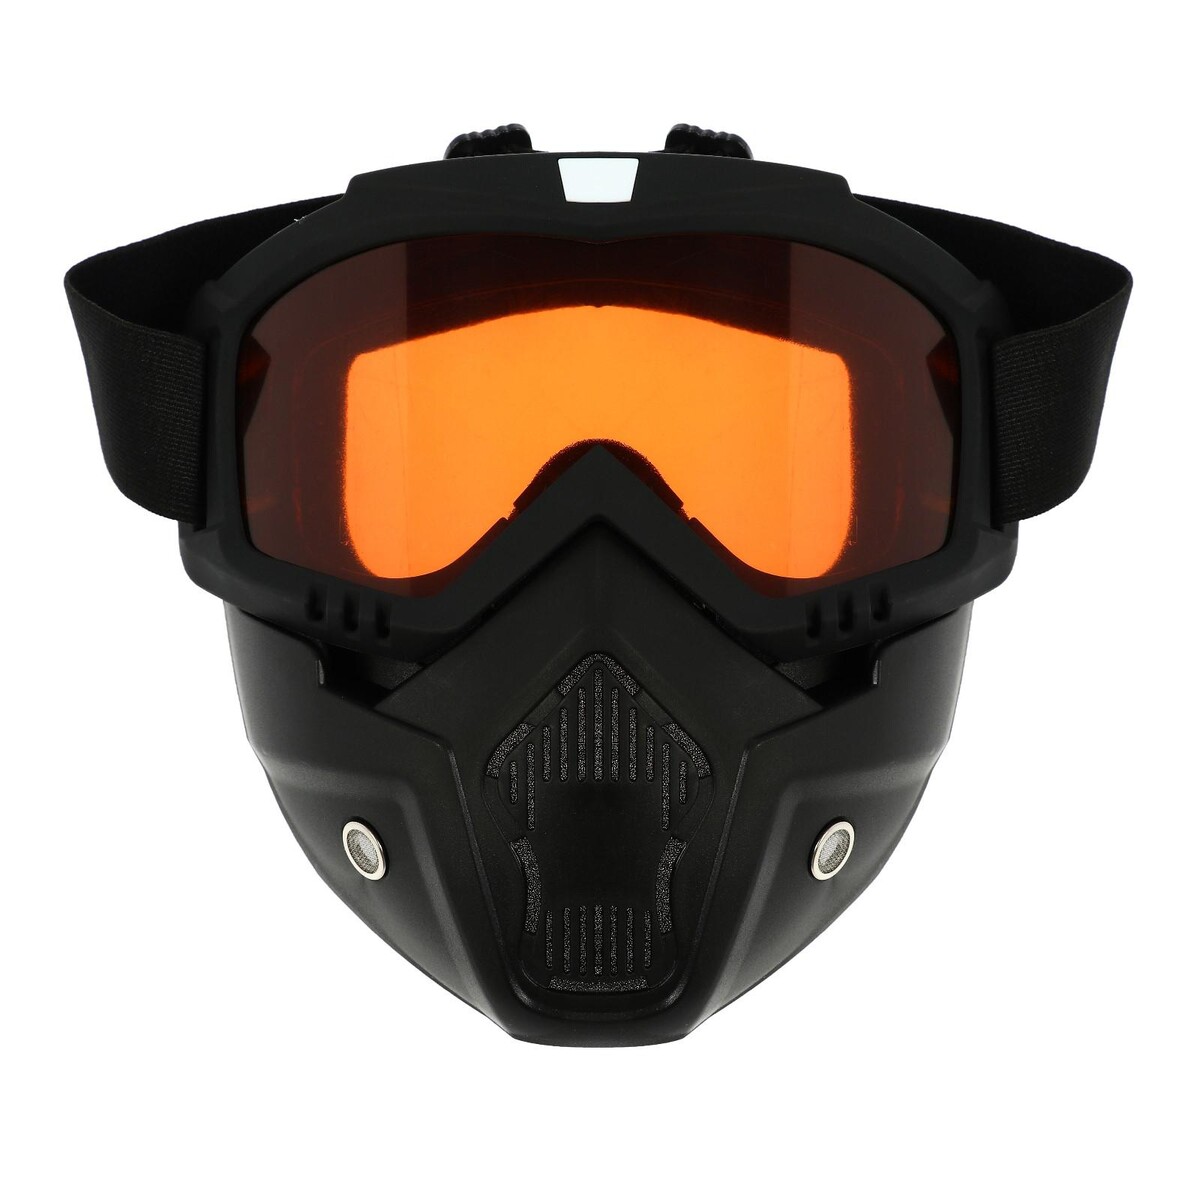 Очки-маска для езды на мототехнике, разборные, стекло оранжевый хром, цвет черный очки маска для езды на мототехнике разборные визор желтый